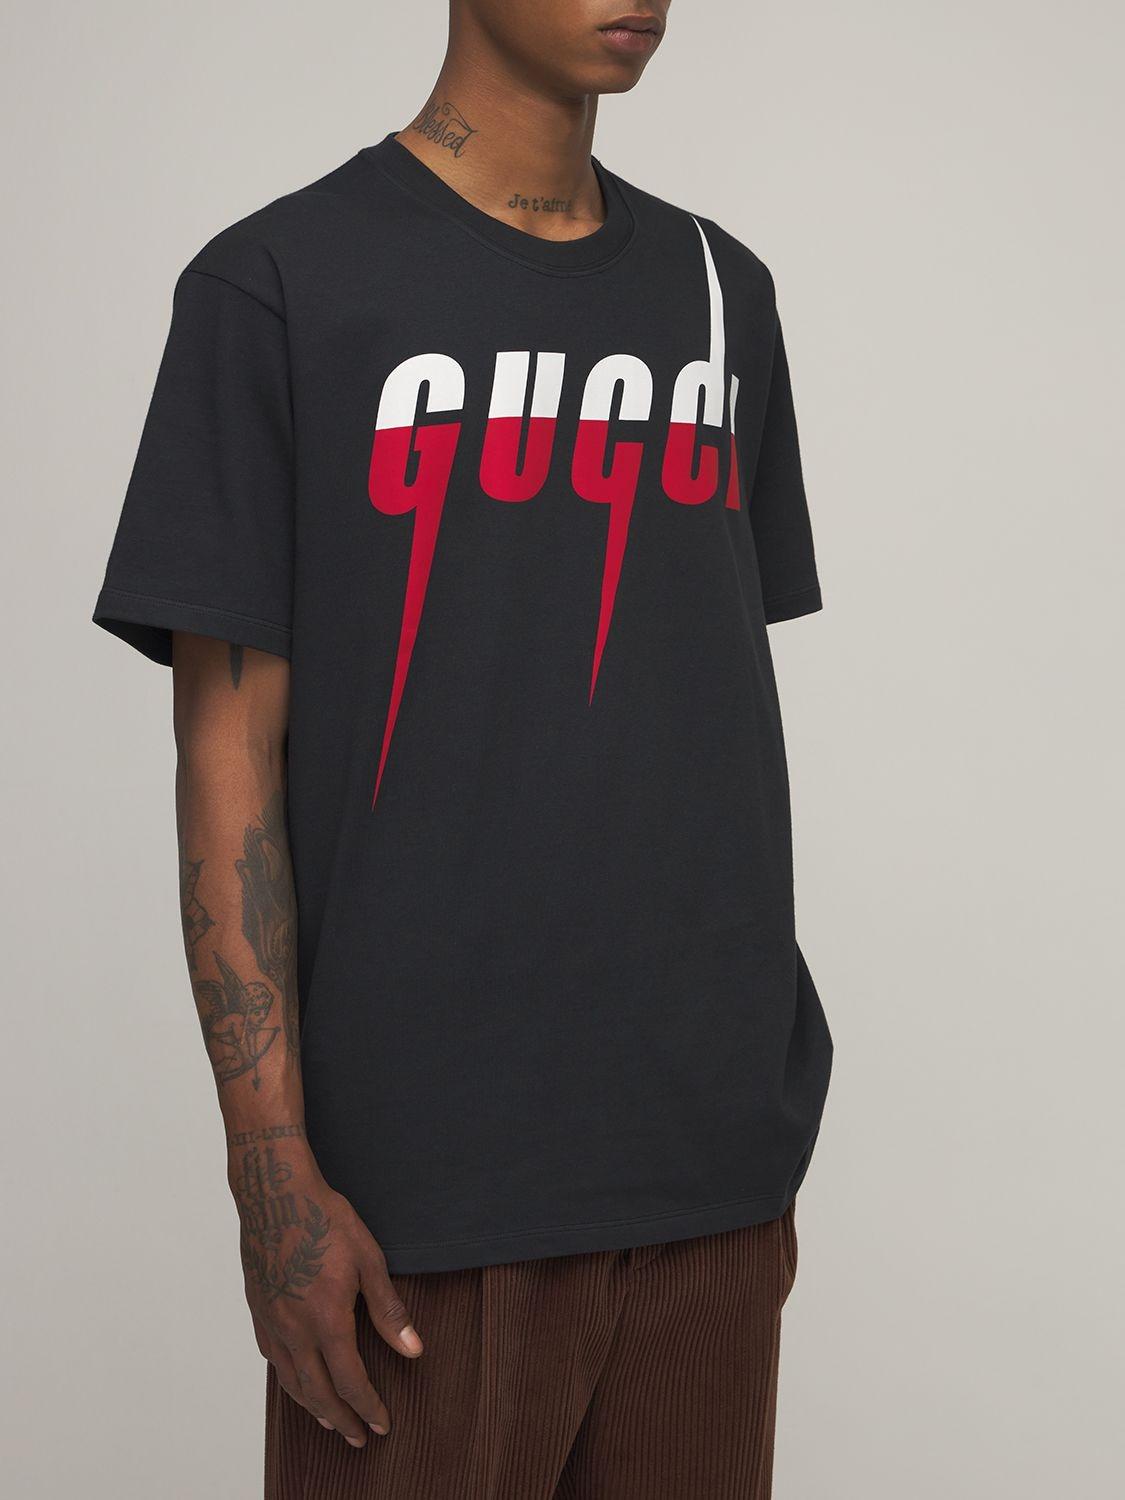 Gucci Baumwolle T-Shirt mit Blade-Print in Schwarz für Herren - Sparen Sie  17% | Lyst CH